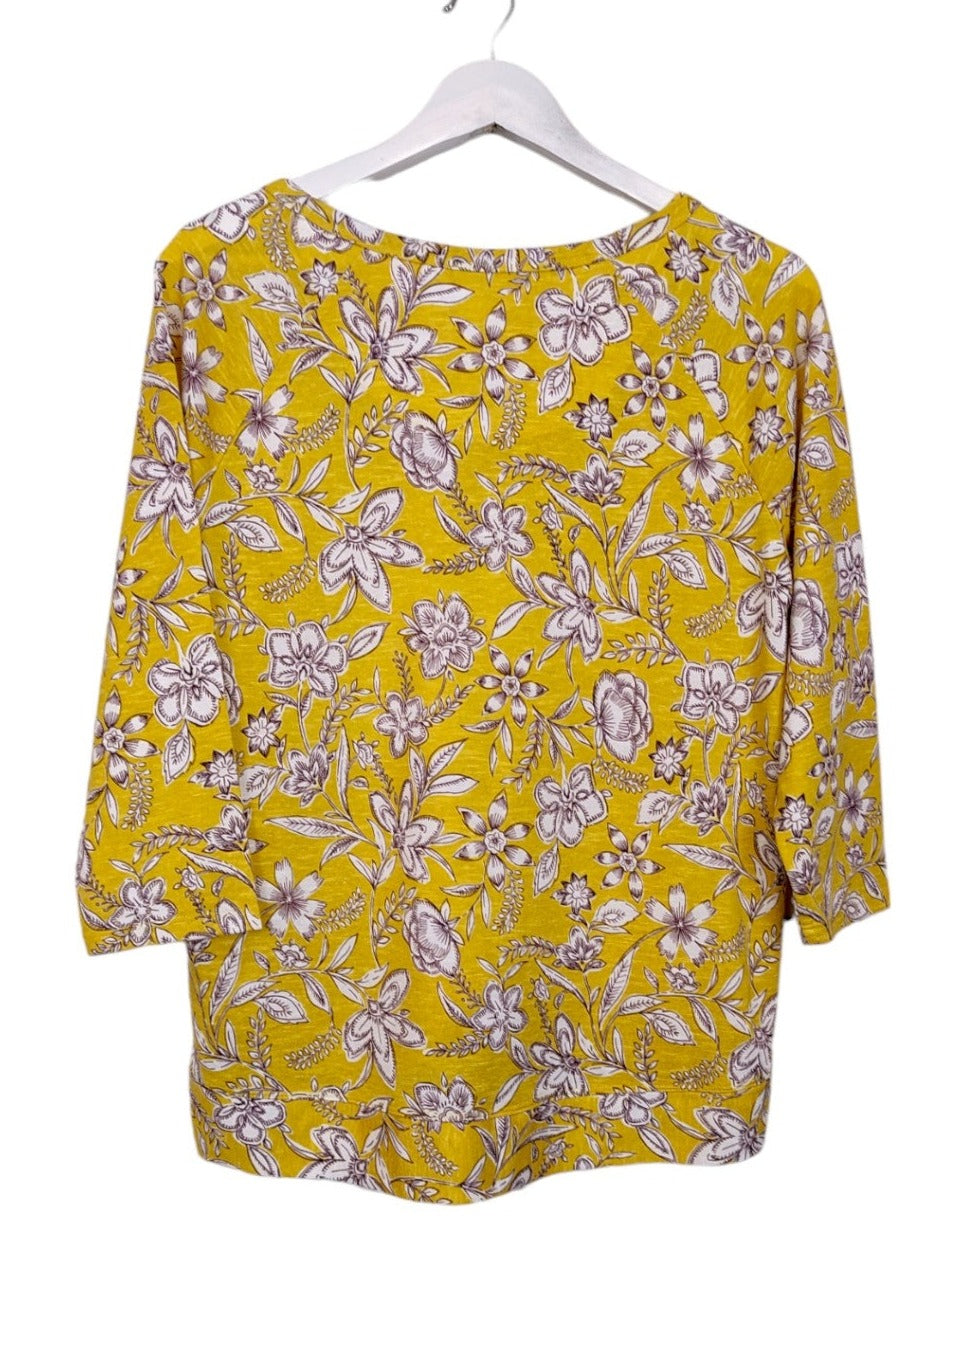 Εμπριμέ, Γυναικεία Μπλούζα M&S COLLECTION σε Κίτρινο χρώμα (Large)